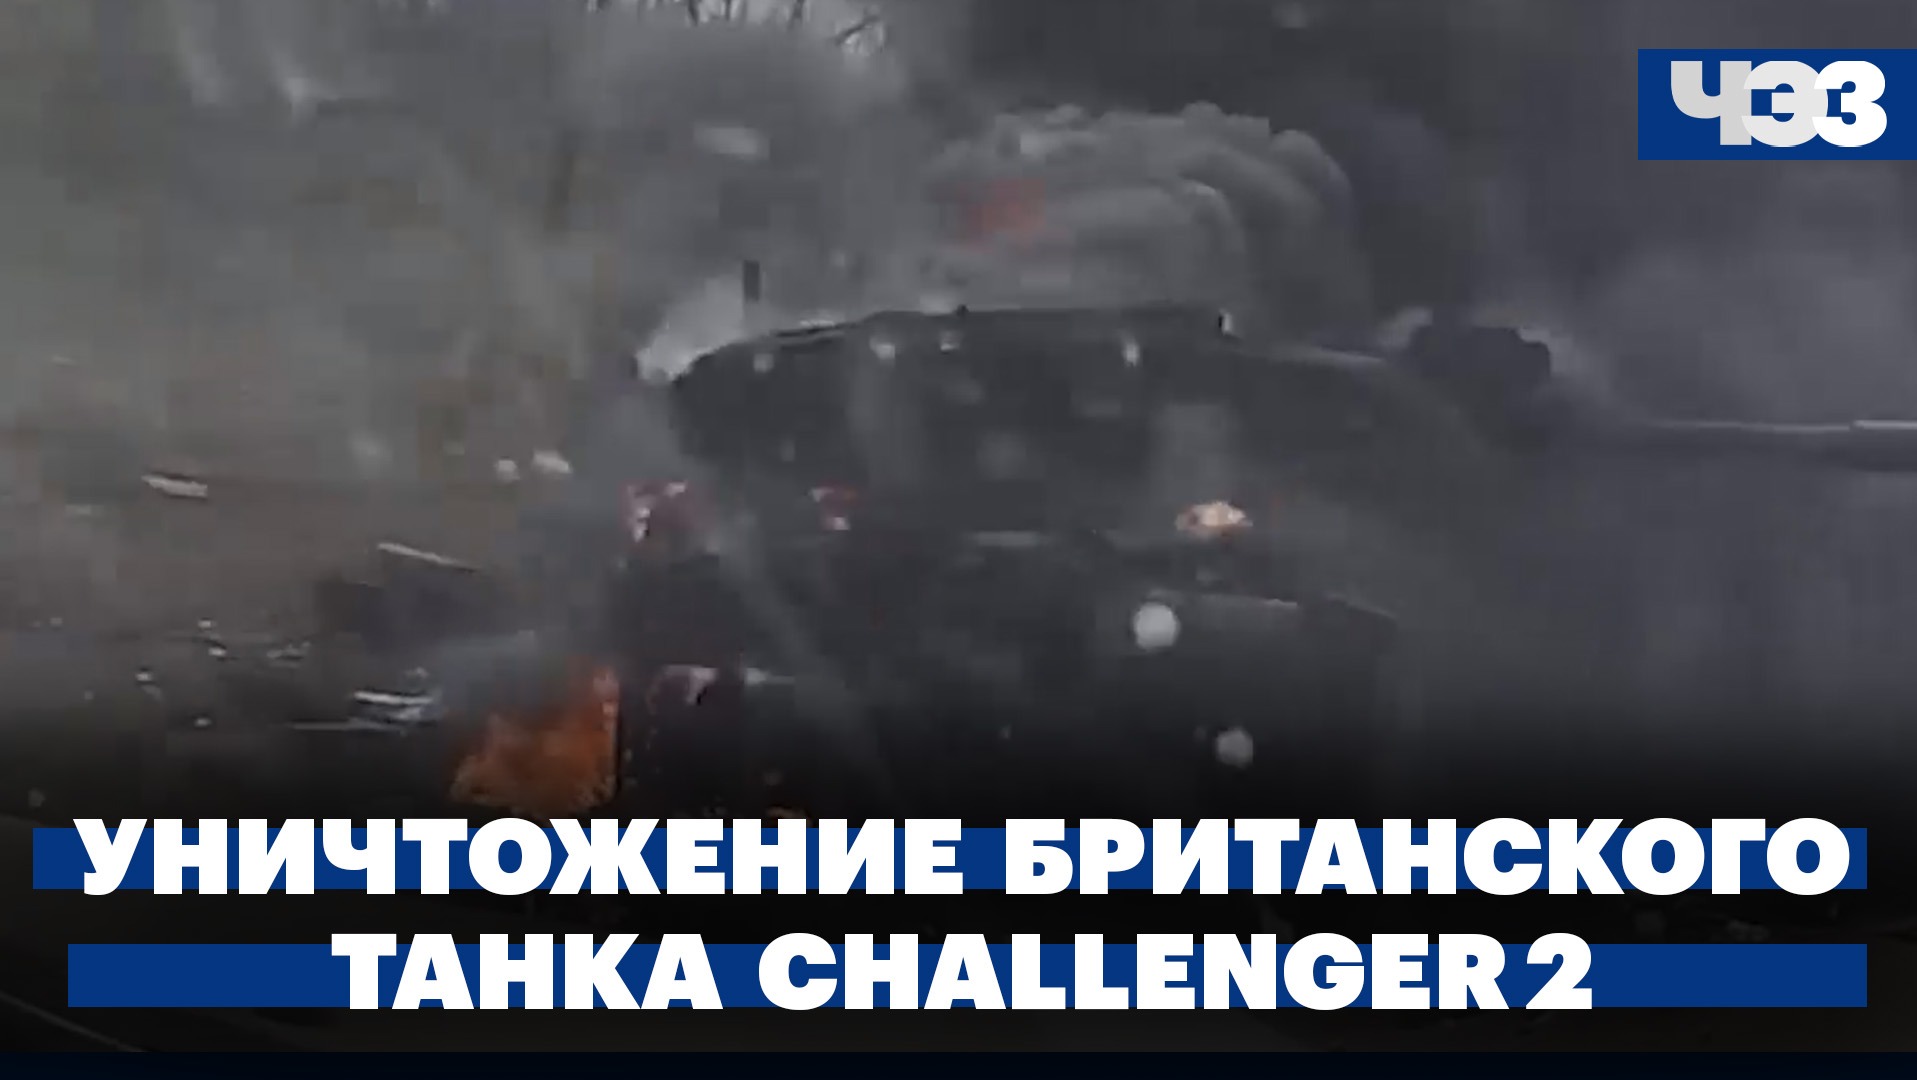 Уничтожение британского танка Challenger 2: впервые с 1994 года. Дефицит кадров в общепите